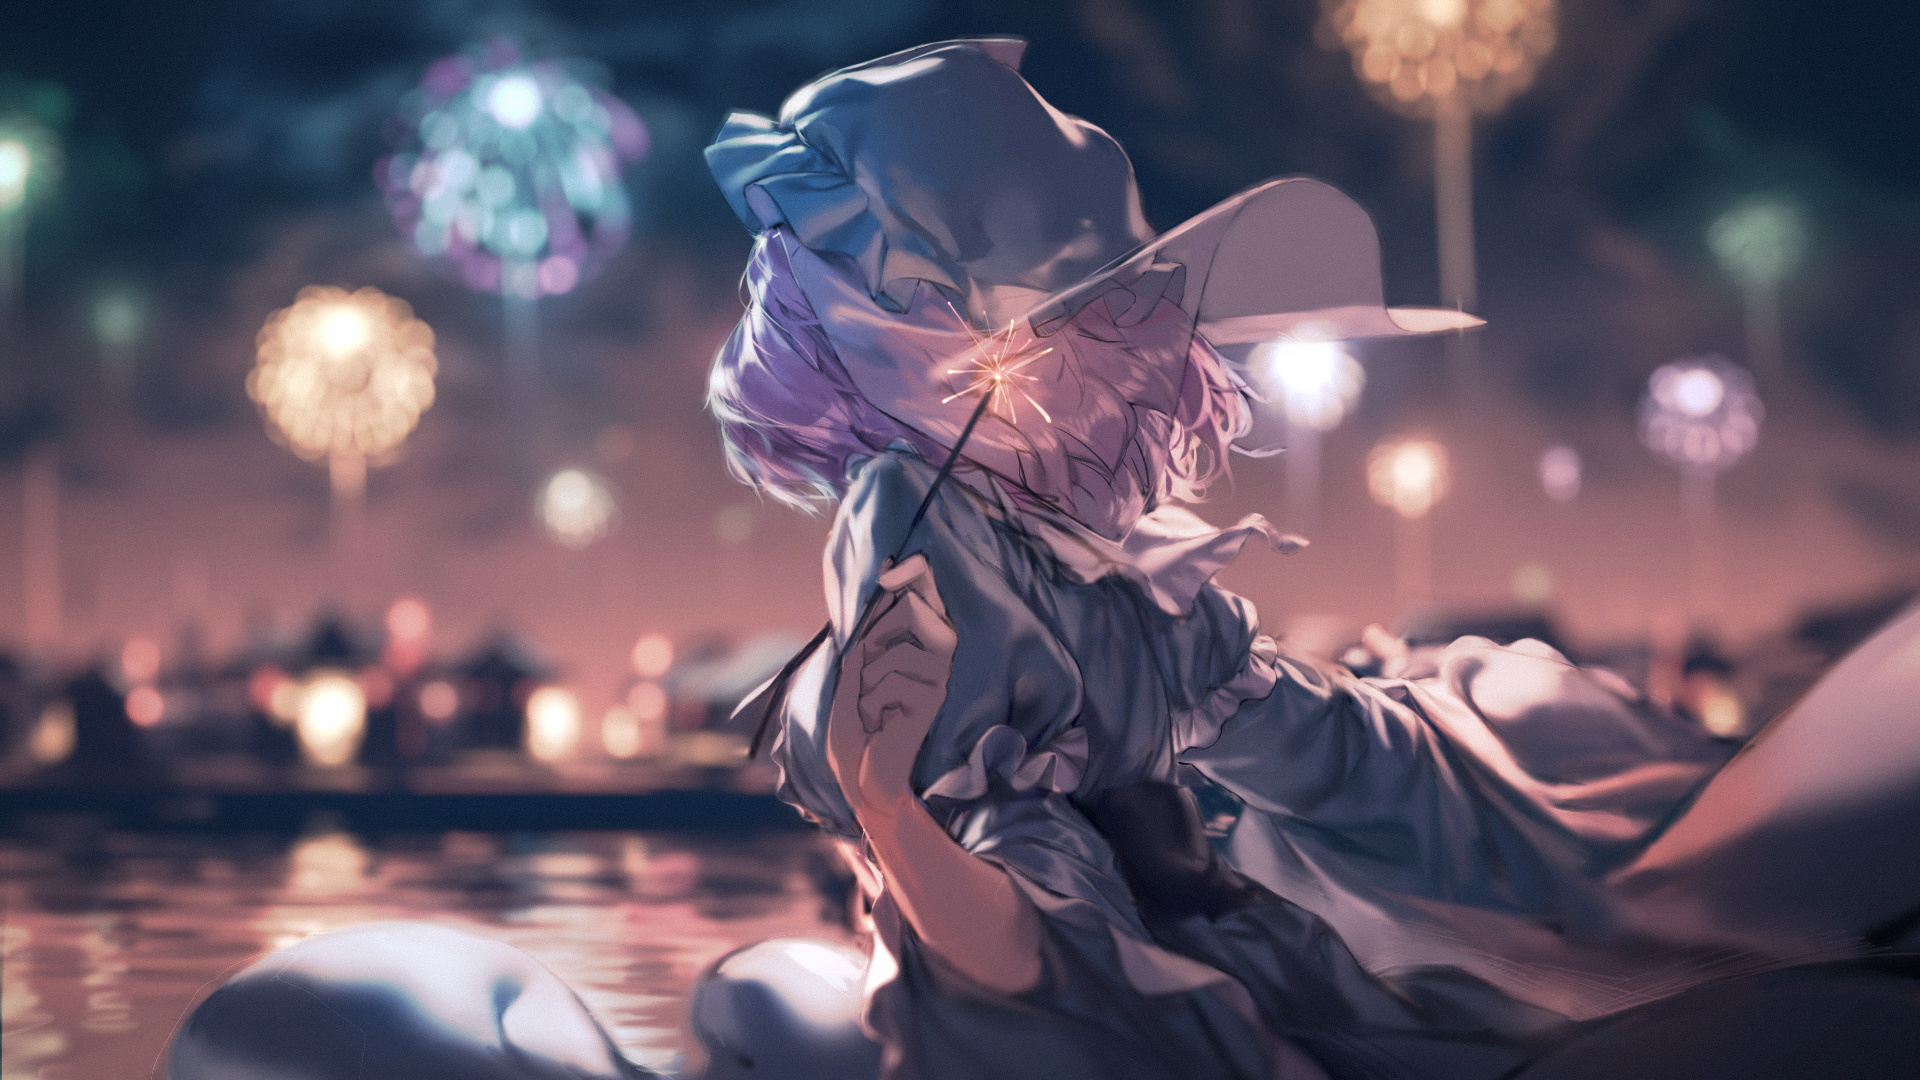 Wallpaper Yuyuko Saigyouji, Touhou, enjoying fireworks, anime girl